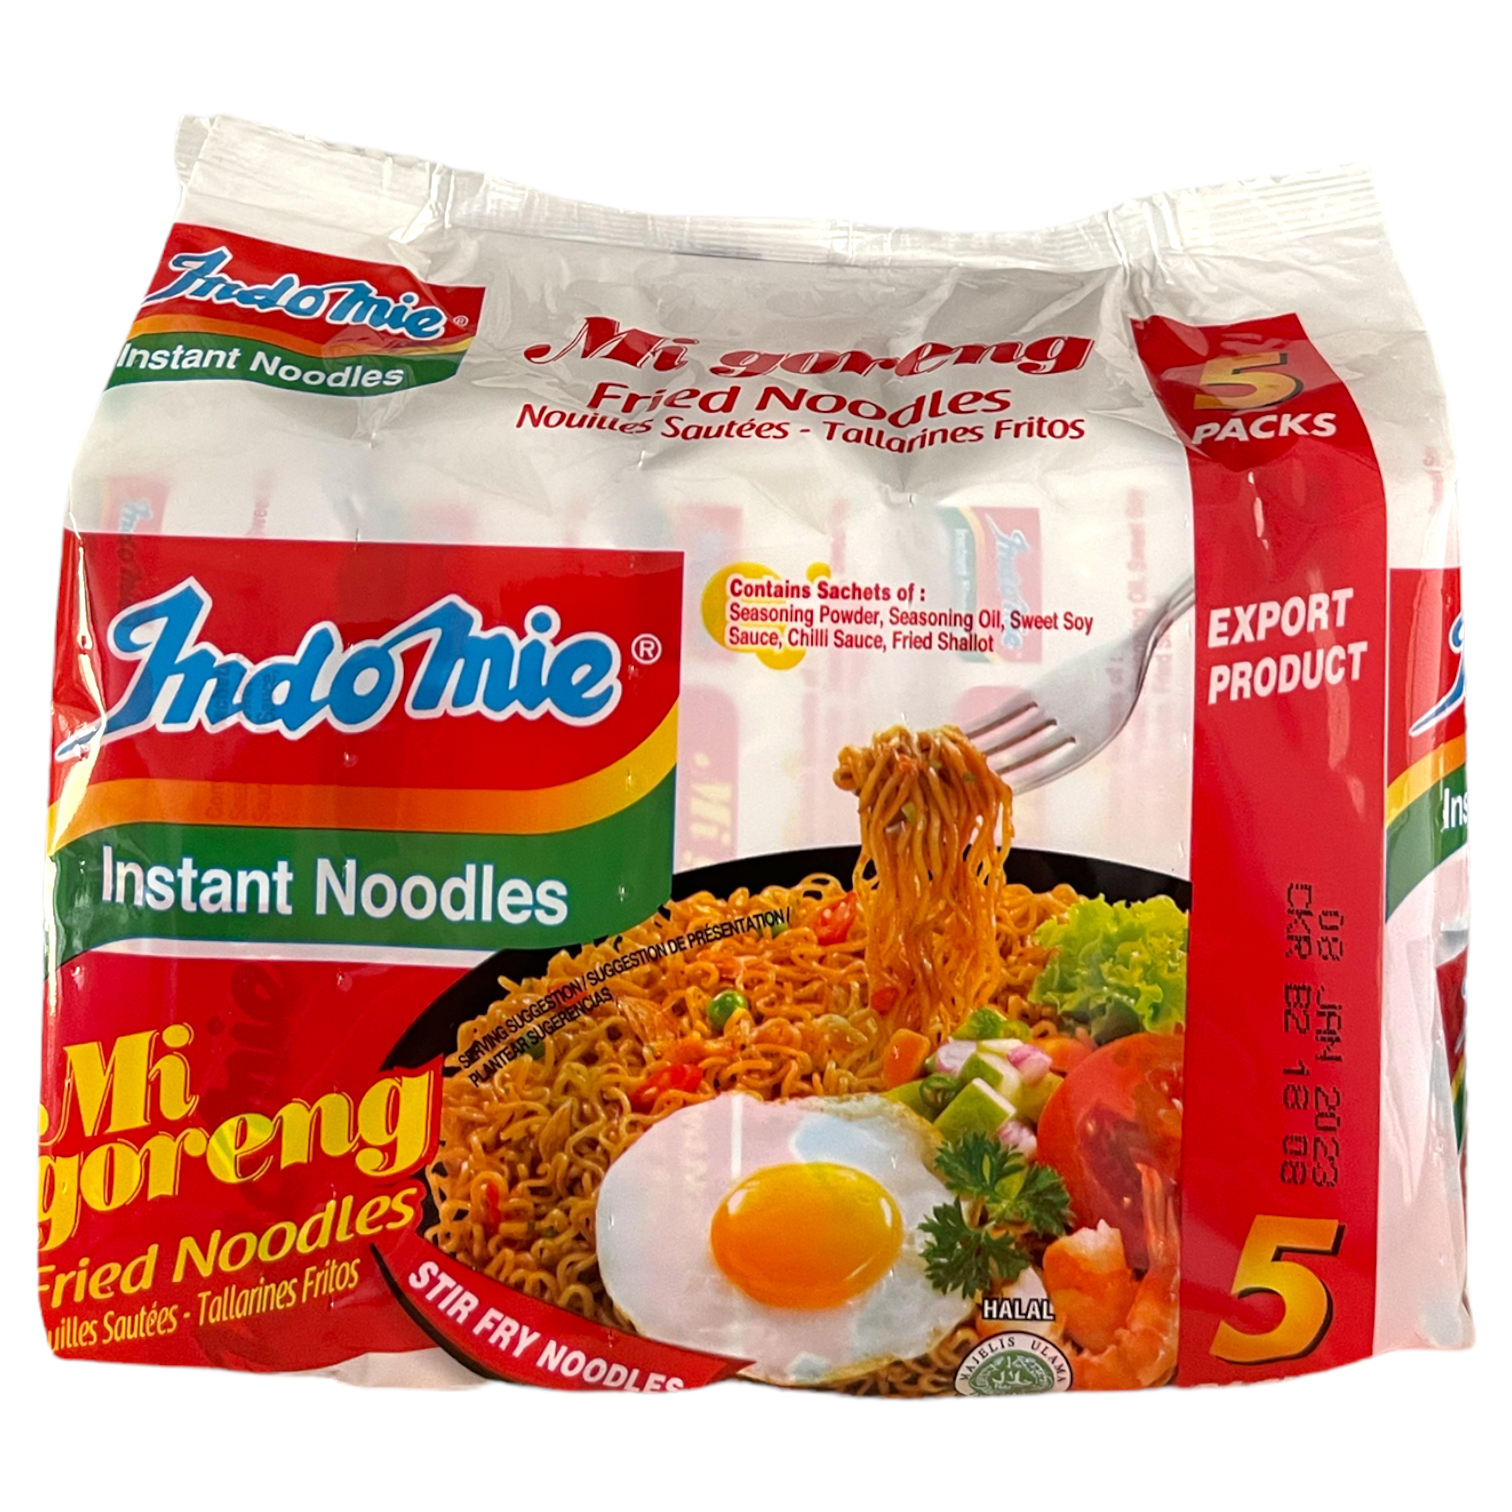 Indomie Instant Noodles: Fried Mi Goreng (5-pack)